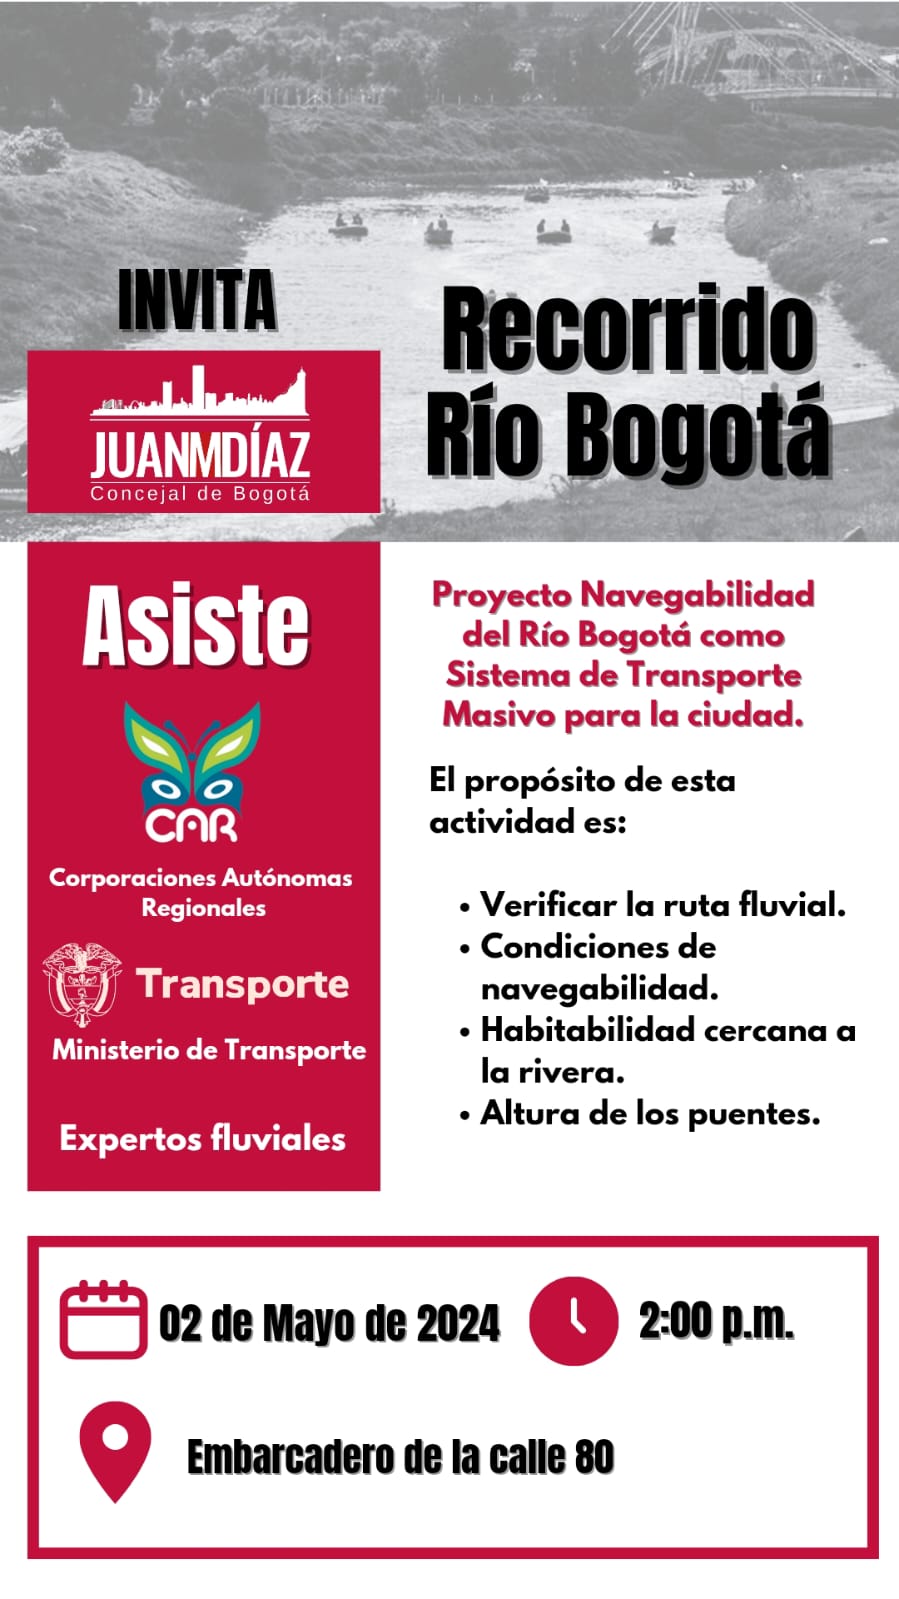 Flayer de invitación al recorrido por el Rio Bogotá el día 2 de mayo de 2024